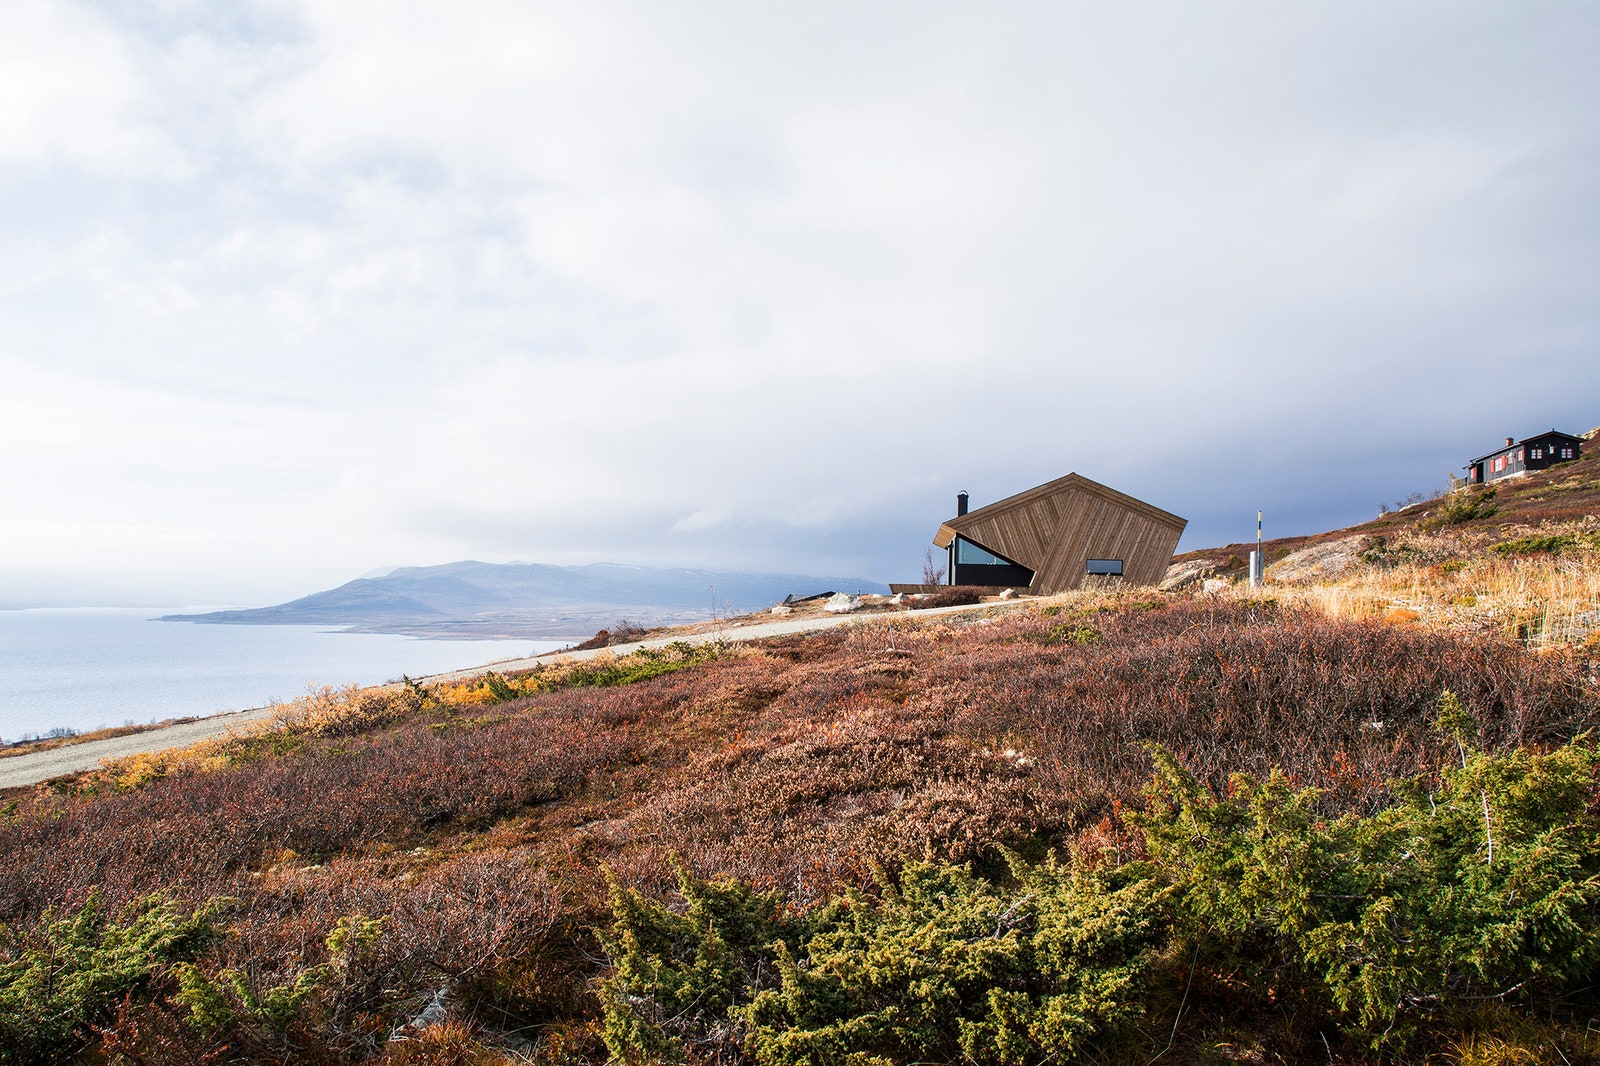 Дом с защитным “капюшоном” в Норвегии